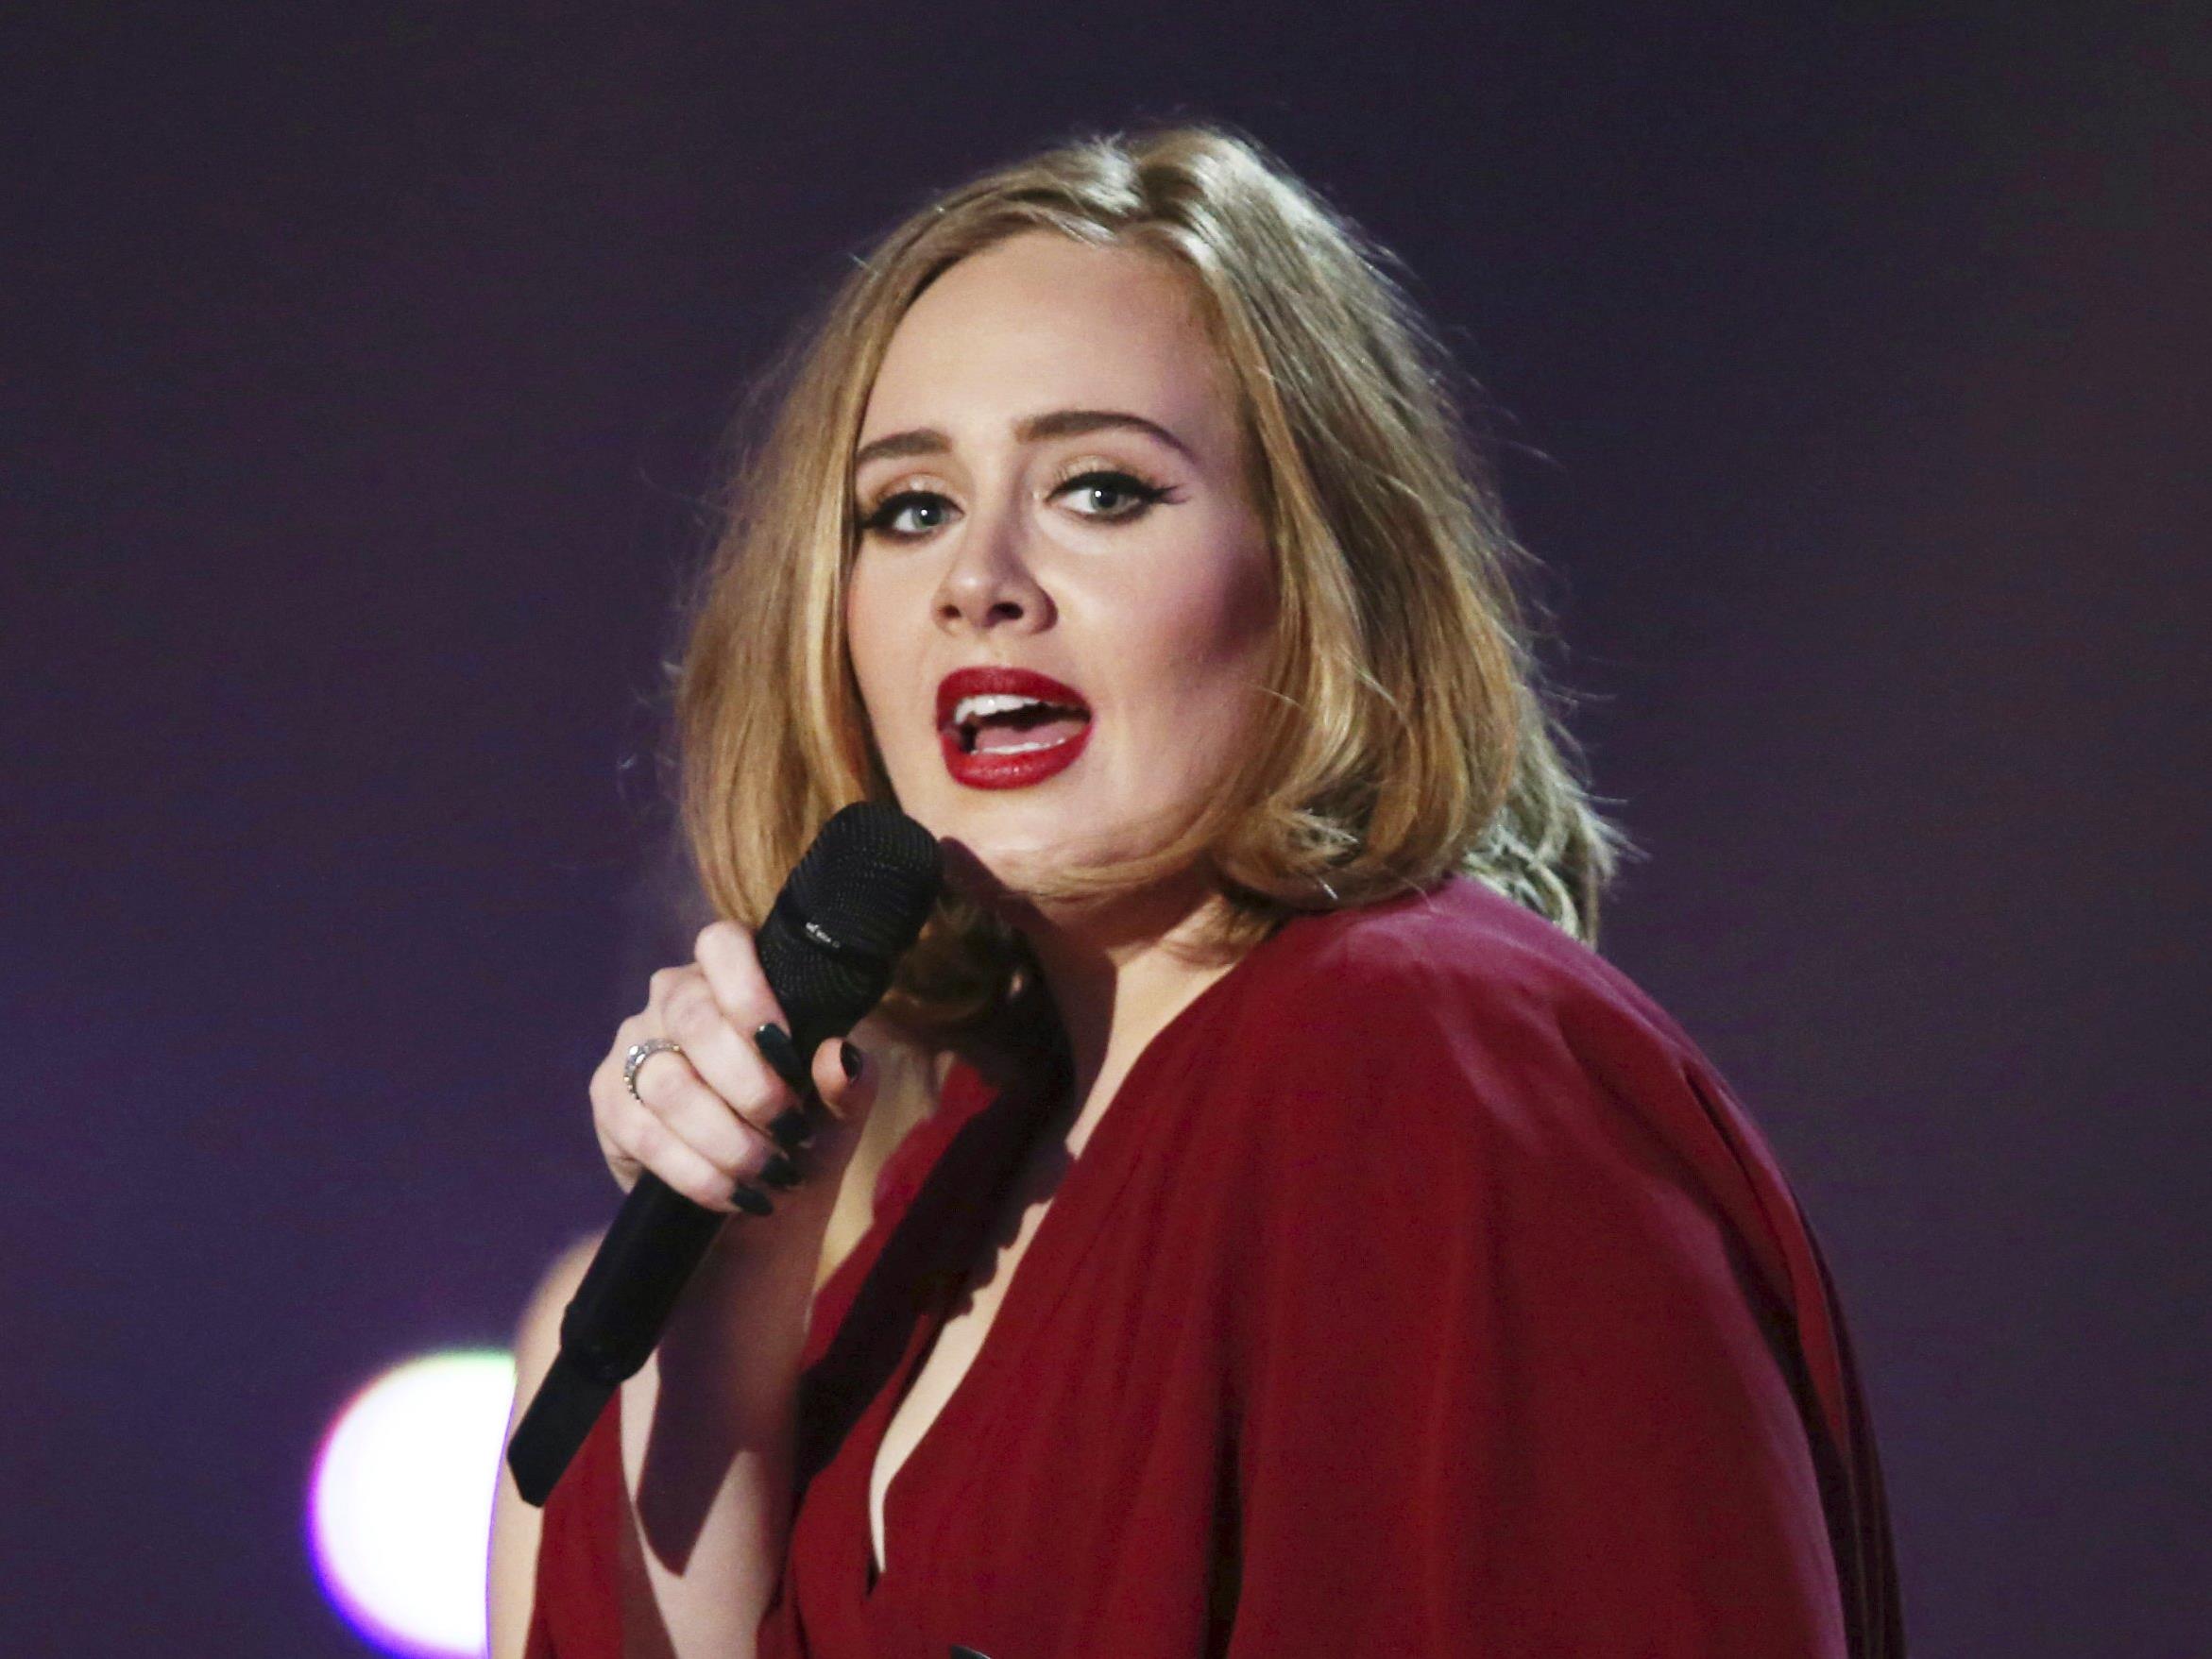 Über Chartstürmerin Adele gibt es mehr als nur einen kuriosen Fakt.